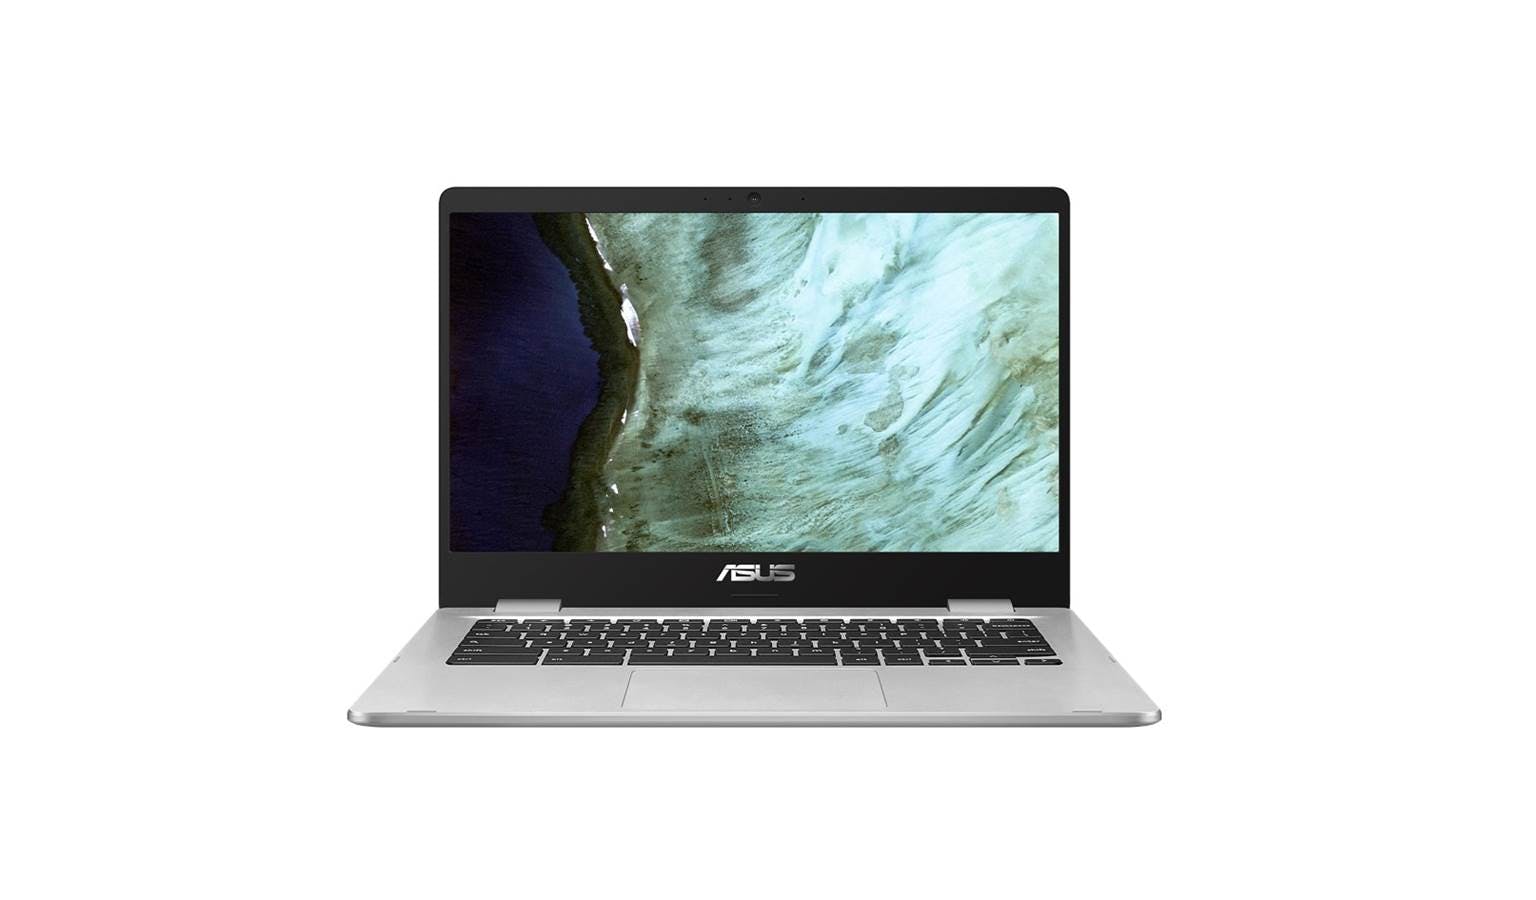 Asus Chromebook C423: Intel Celeron N3350